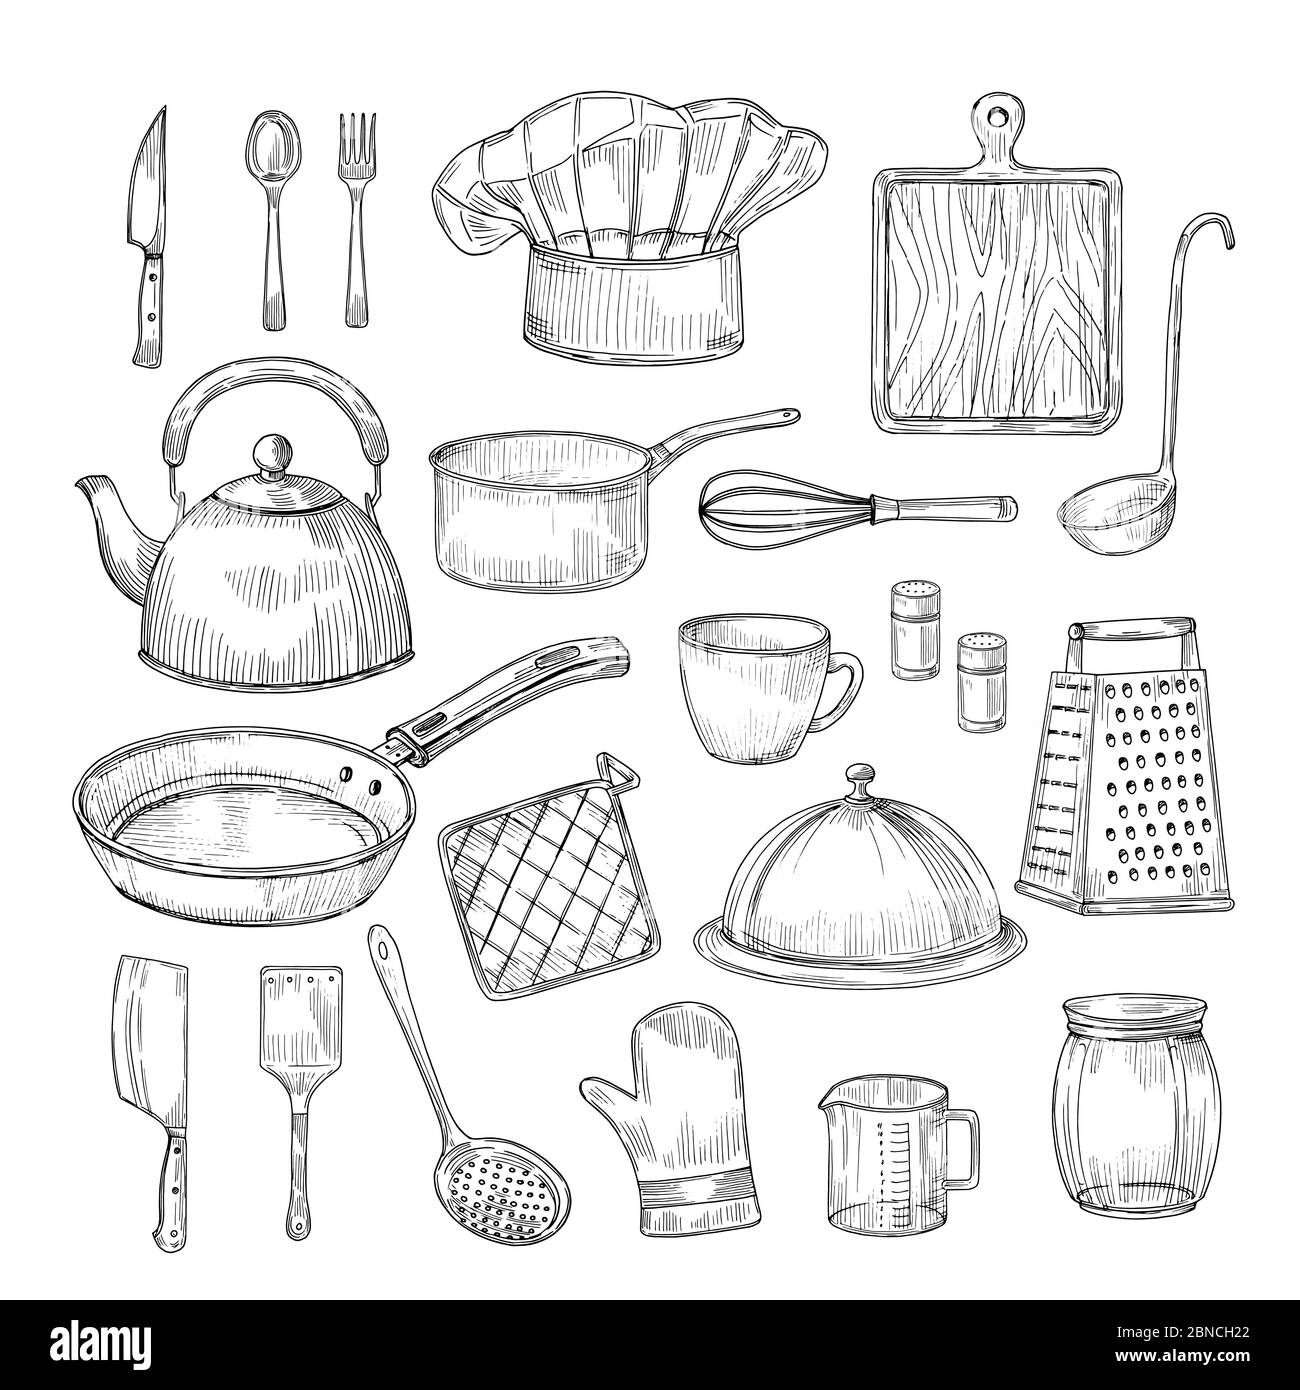 Handgezeichnete Kochwerkzeuge. Küchenausstattung Küchenutensilien Utensilien Vintage Skizze Vektor-Kollektion. Abbildung von Küchengeräten, Löffel und Schüssel Stock Vektor